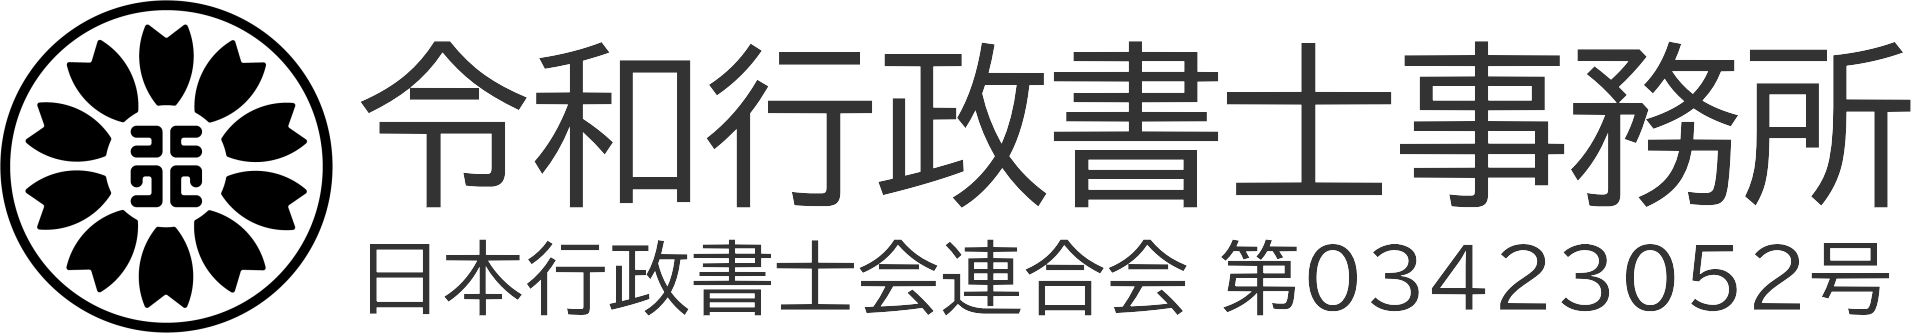 長崎の創業融資申請サポート